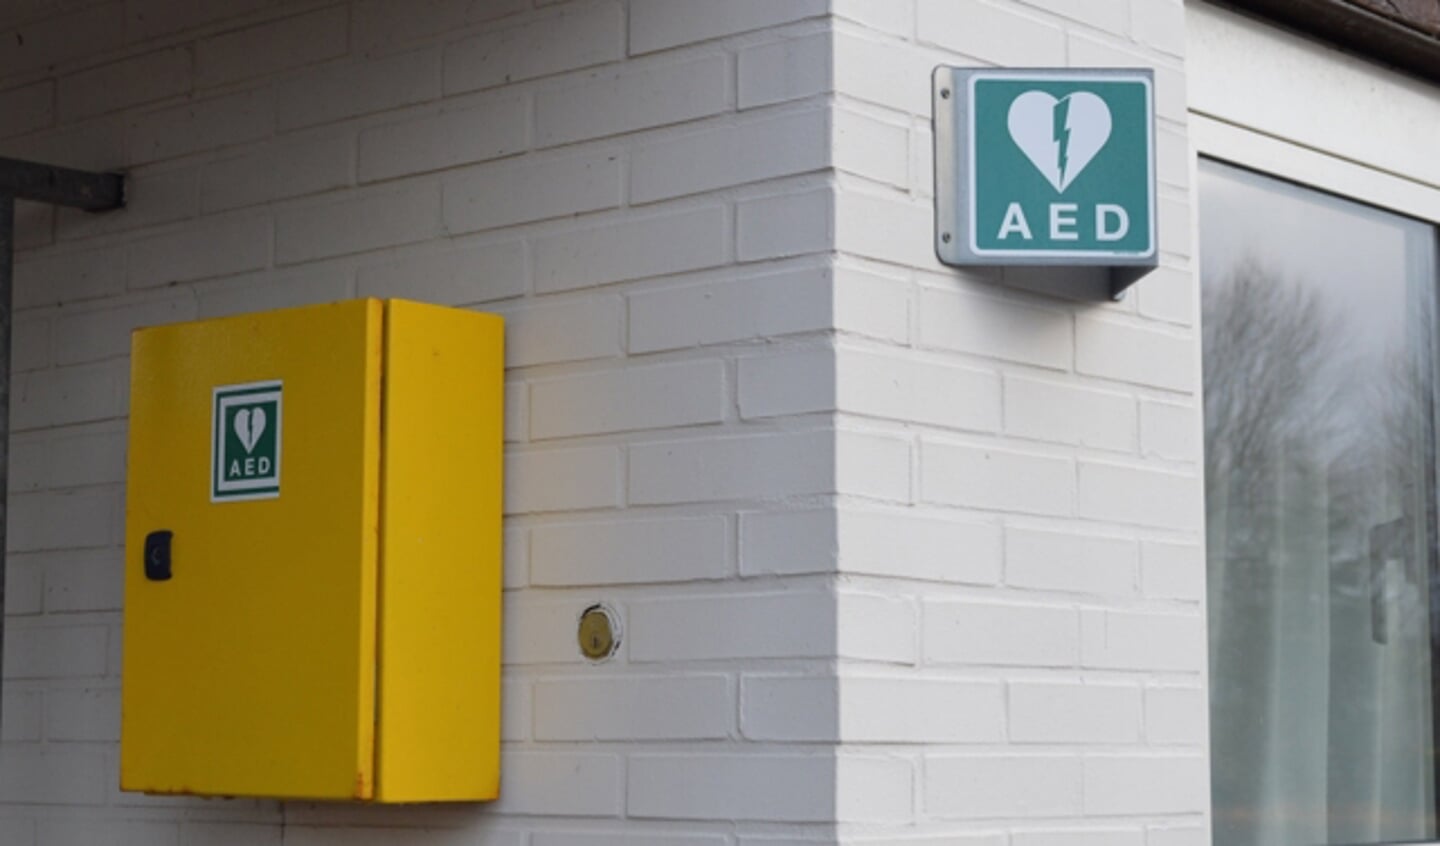  Eén van de 9 AED's in Biddinghuizen.